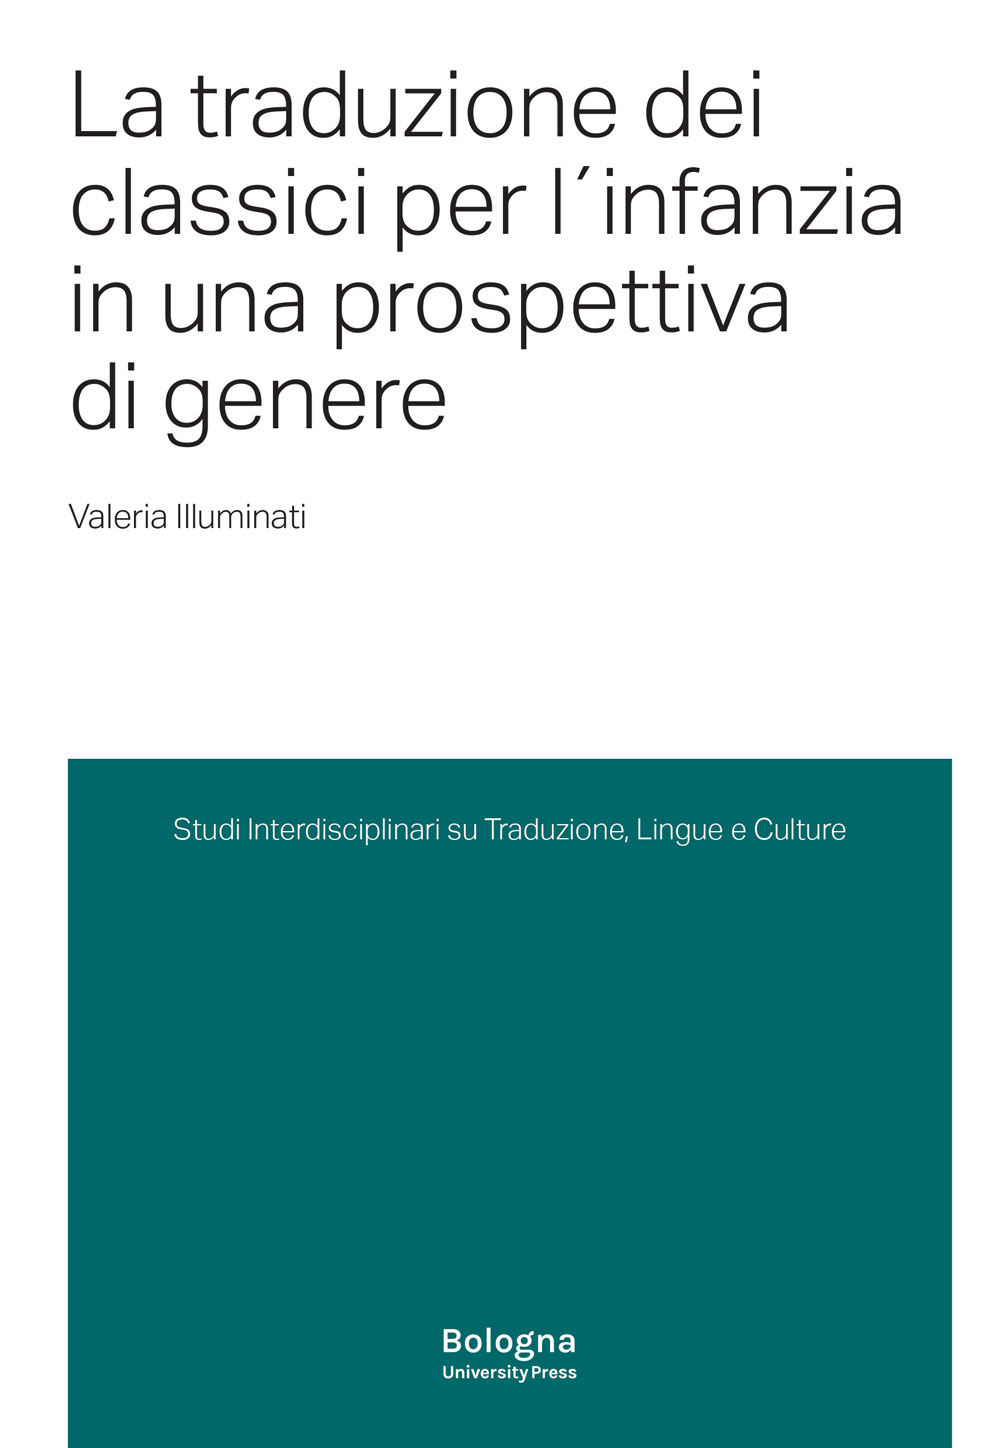 La traduzione dei classici per l'infanzia in una prospettiva di genere - Bologna University Press